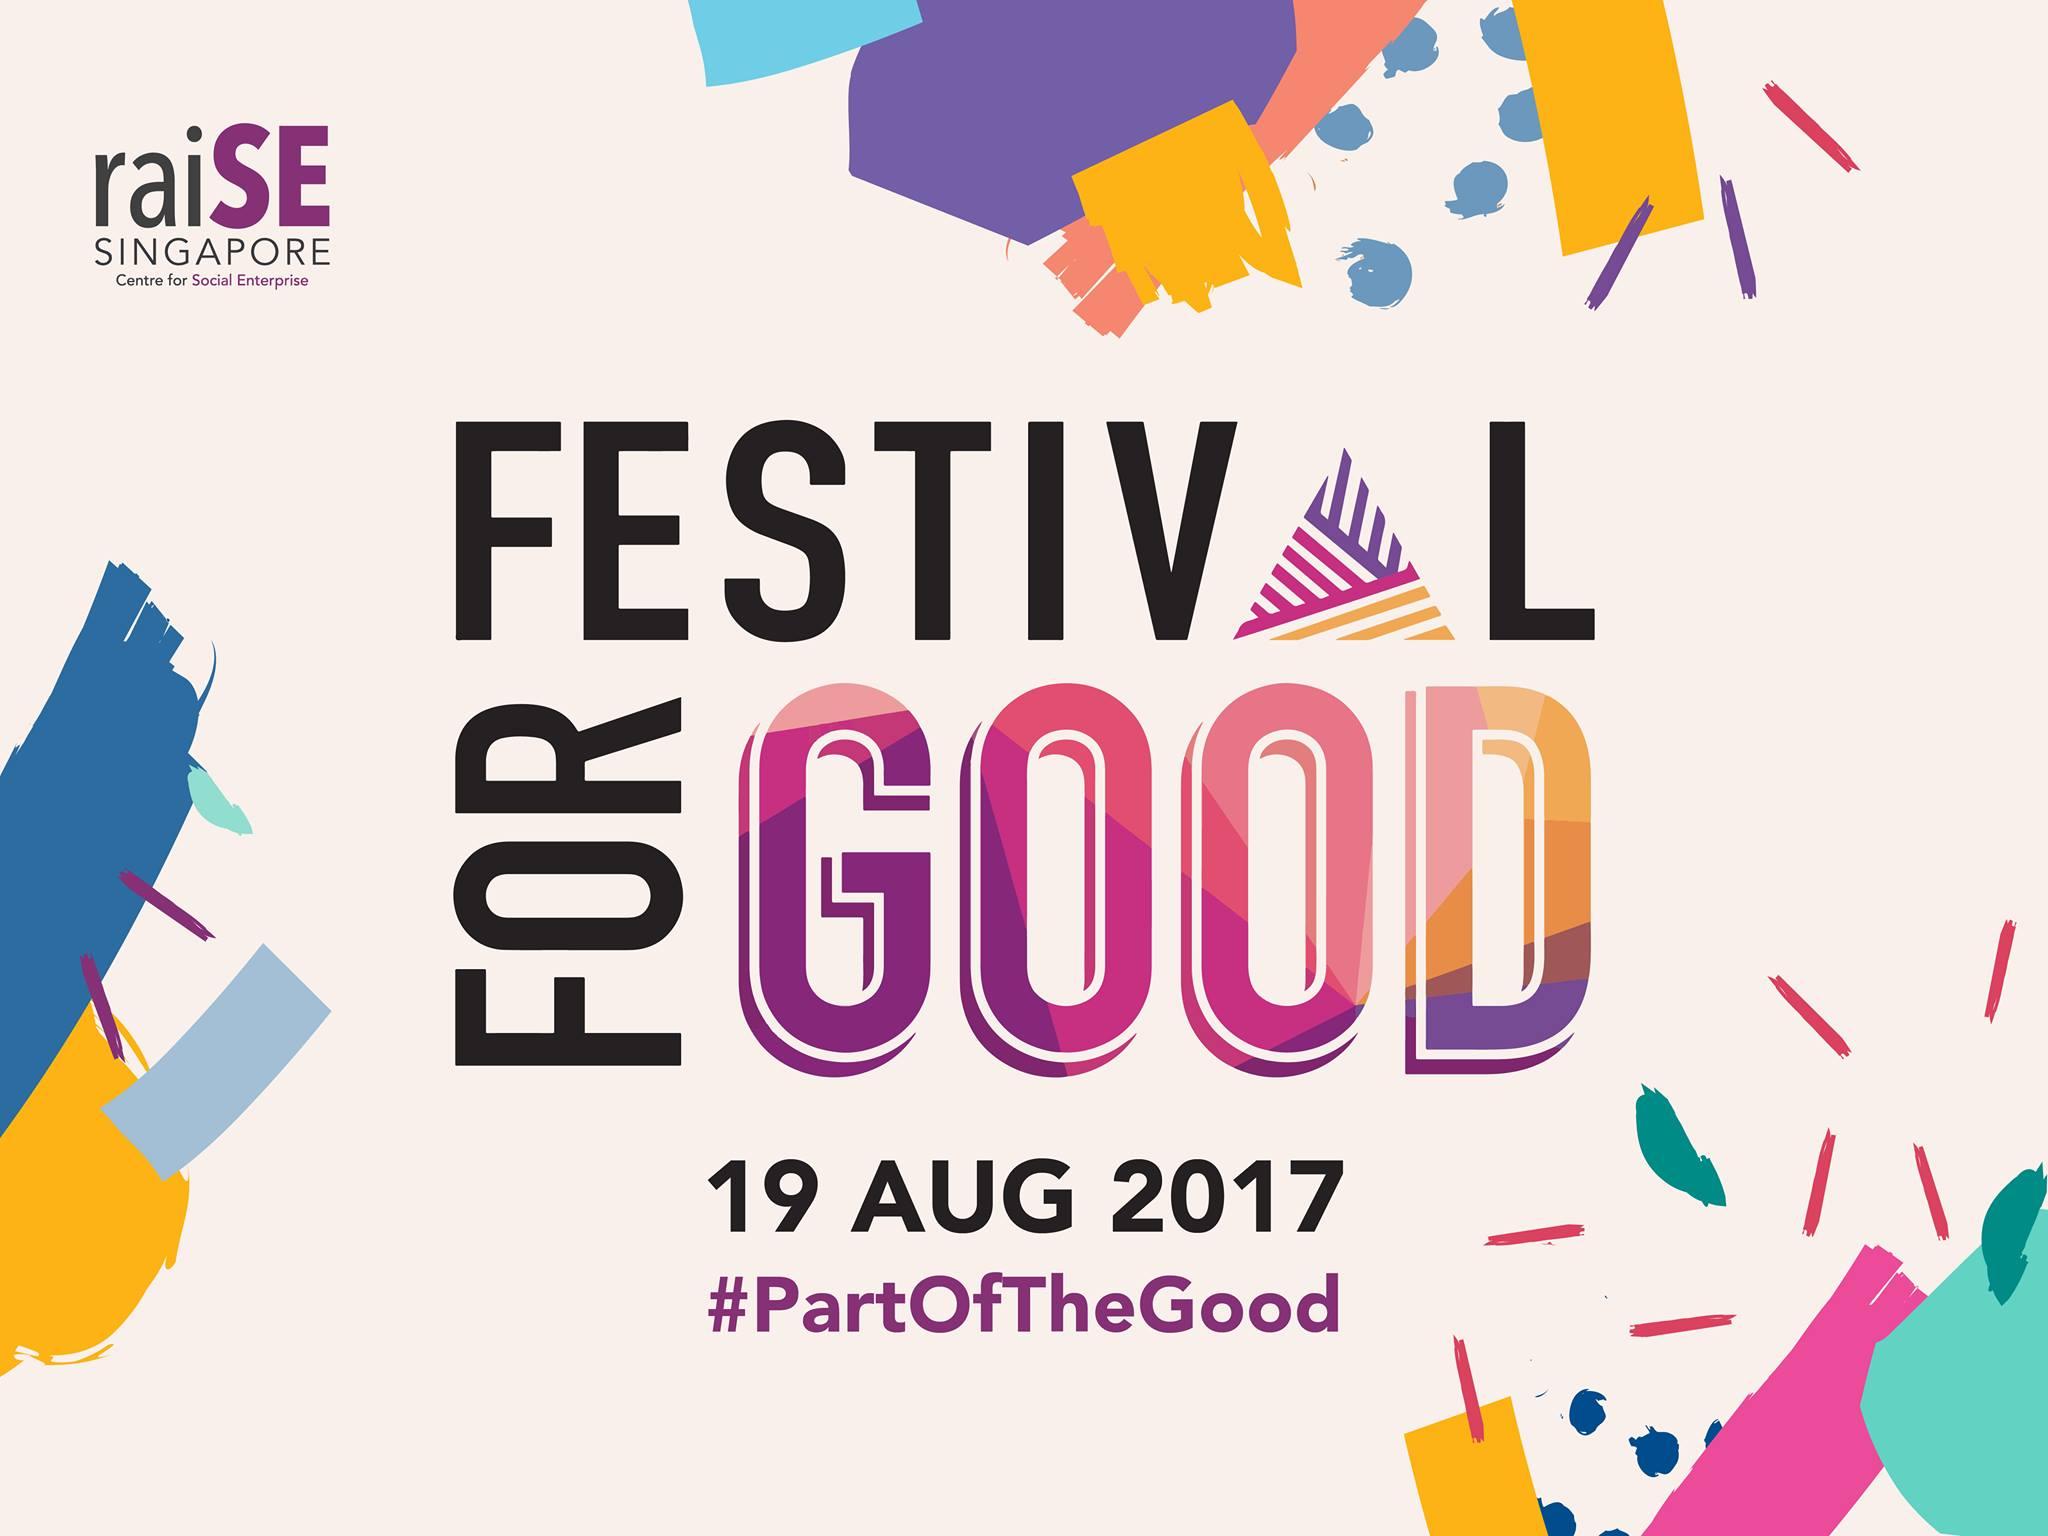 FestivalForGood 2017